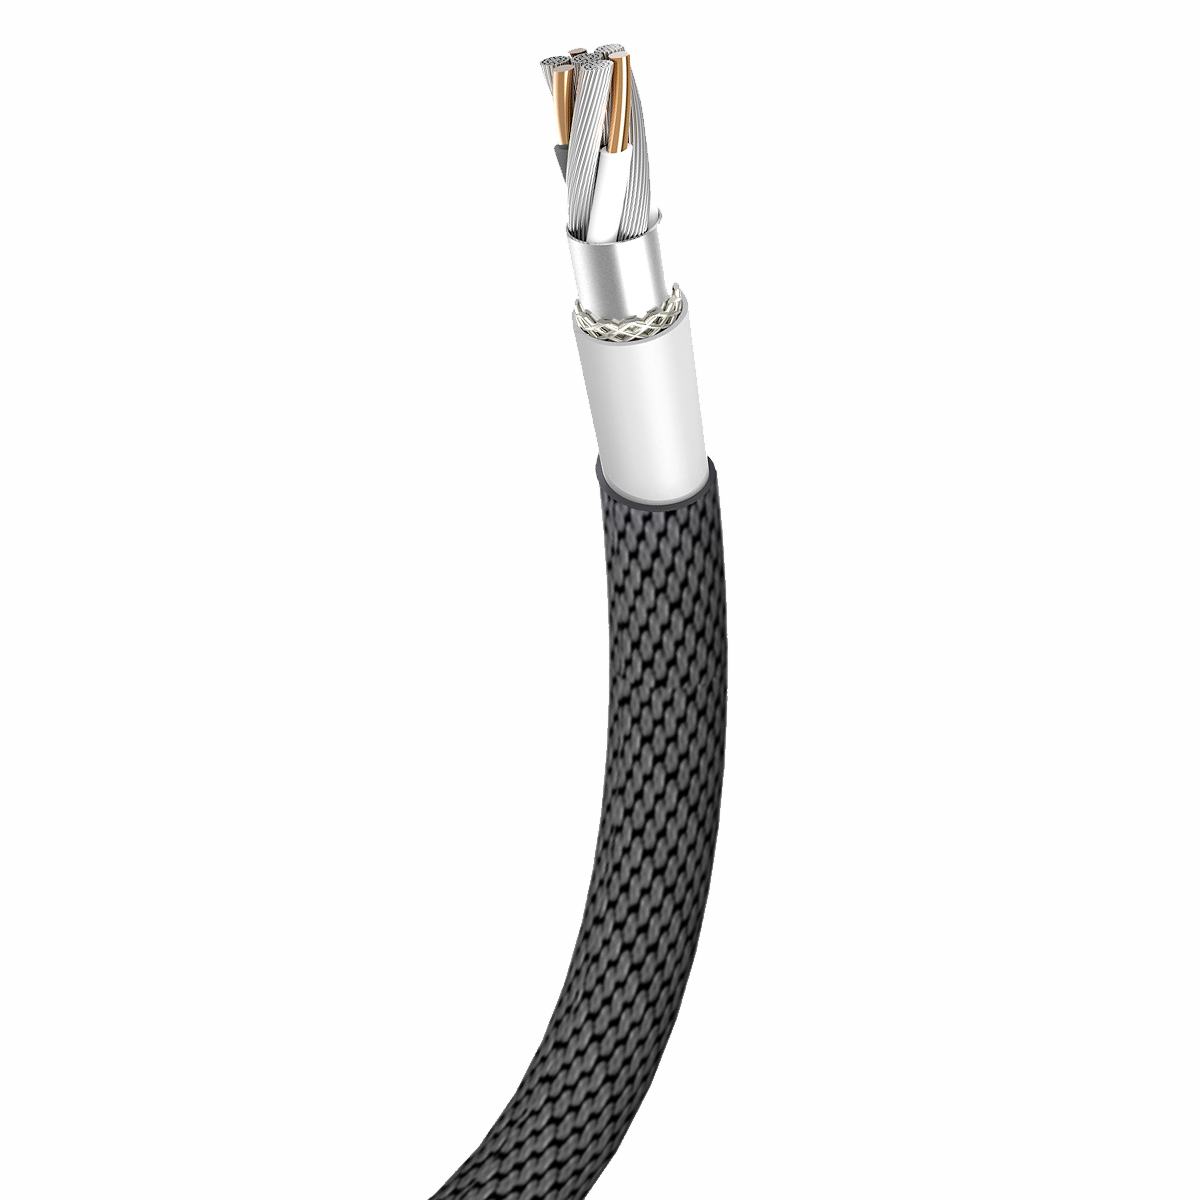 Baseus kabel Yiven (8-pin | 3 m) czarny 1,5A / 3